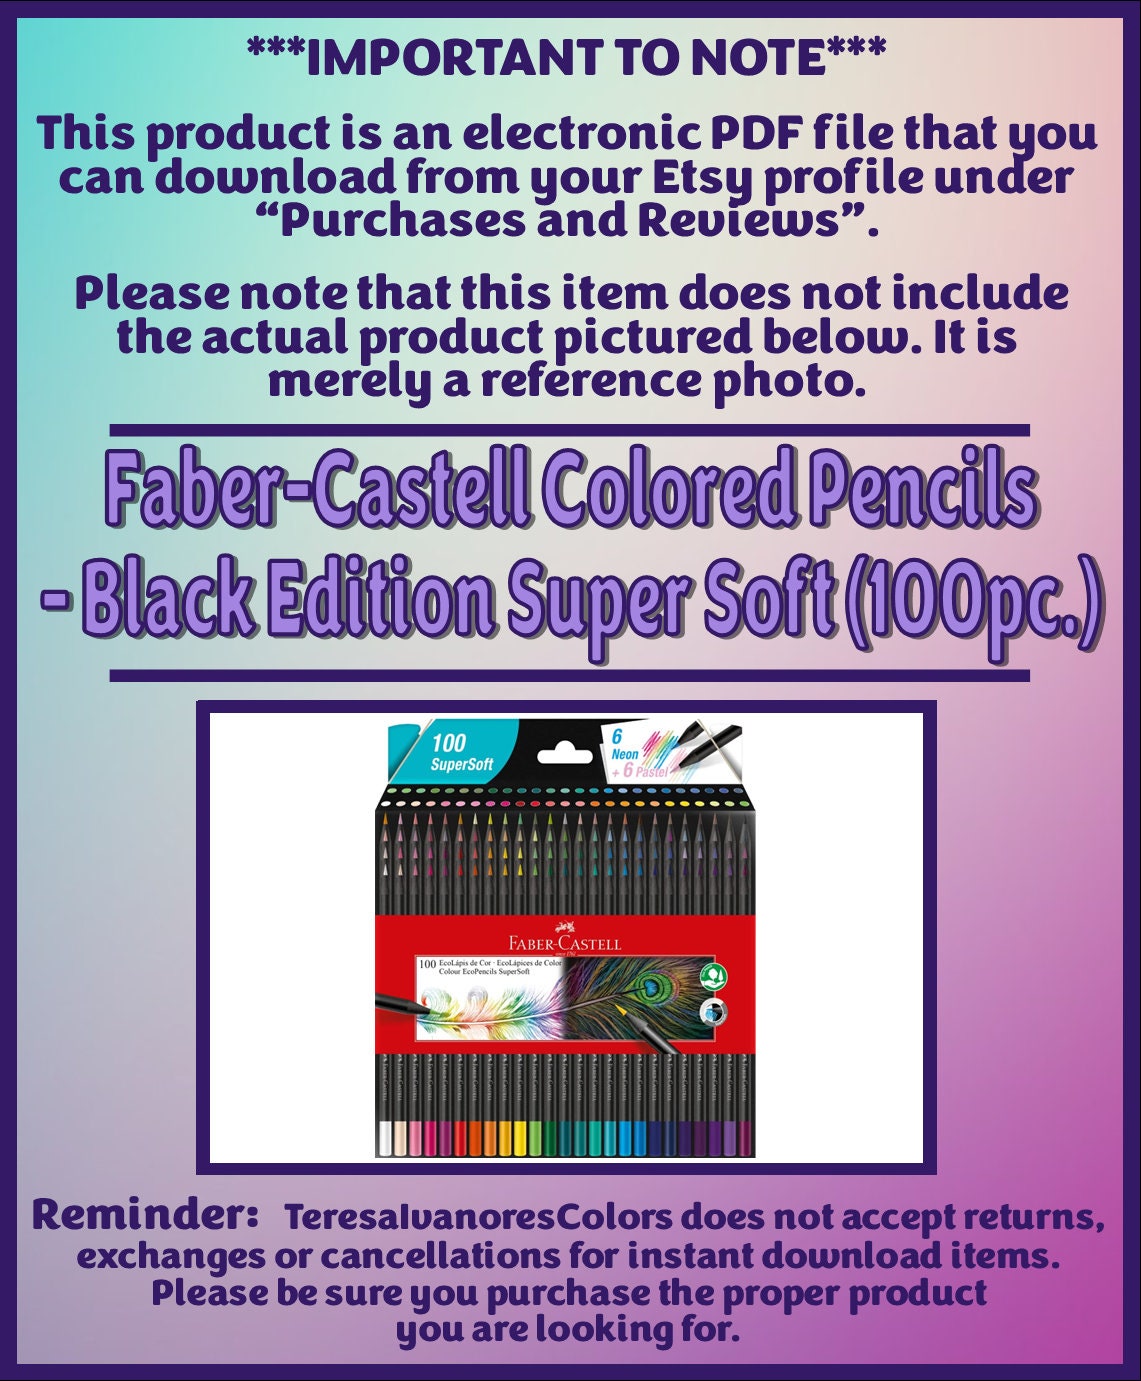 Colores Faber-Castell *100 Super Soft